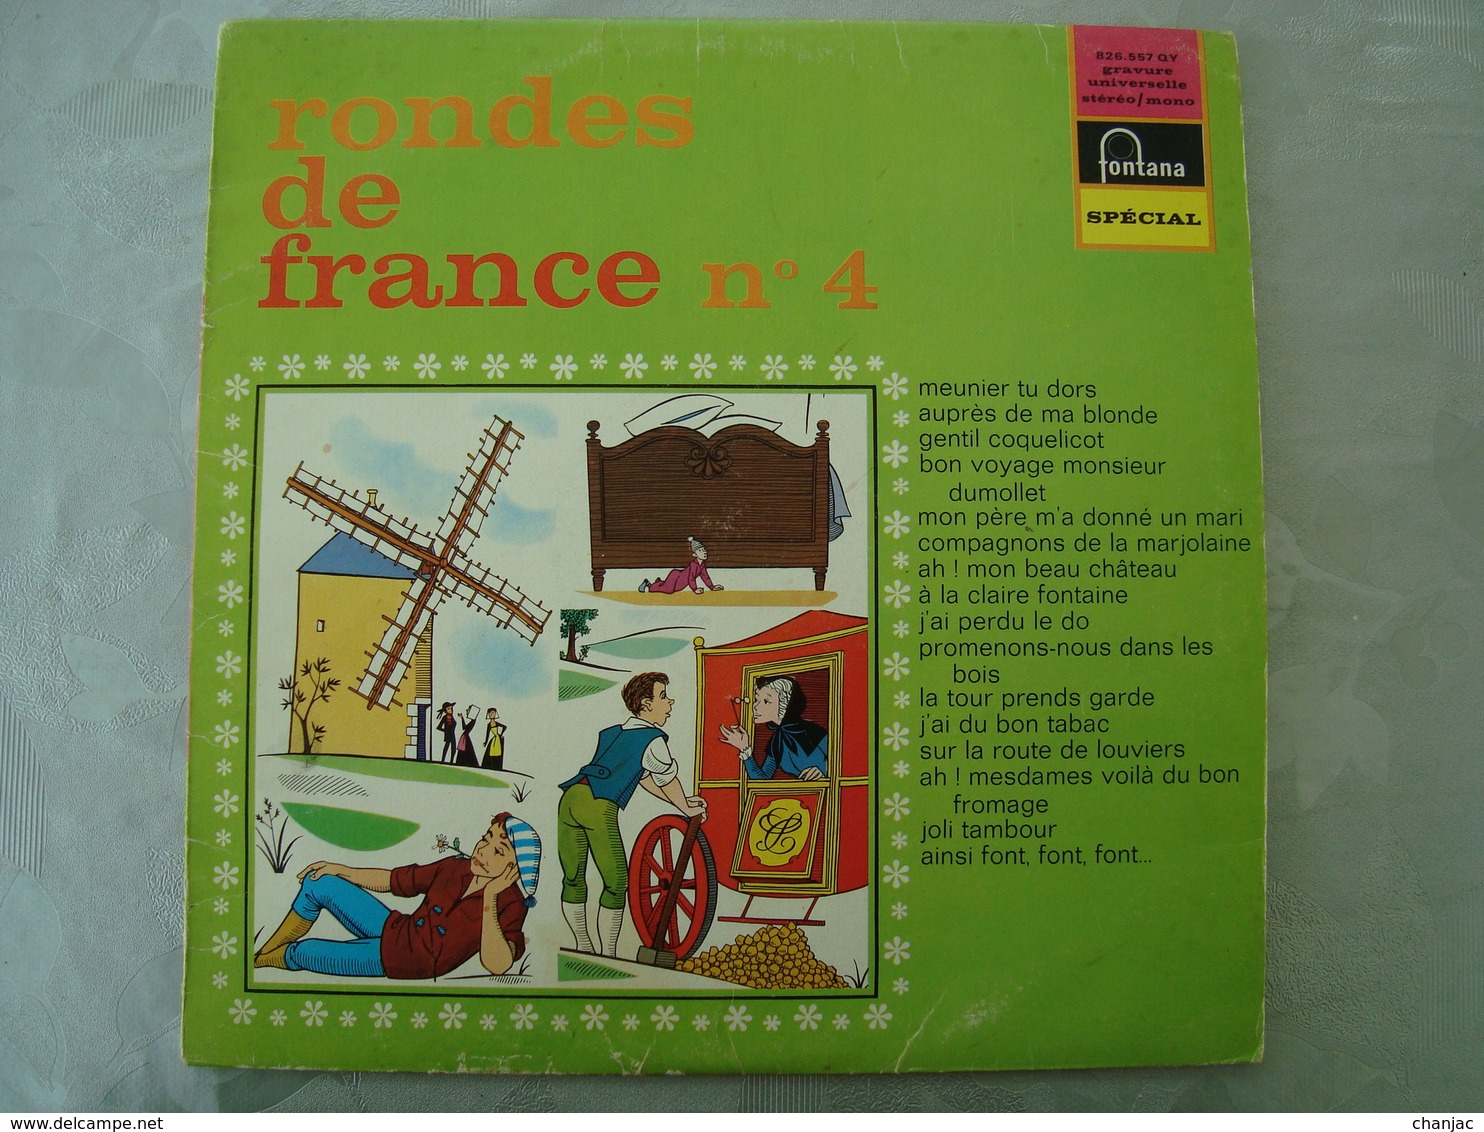 33 Tours: RONDES DE FRANCE N° 4 Meunier Tu Dors - Fontana 826.557 QY - Maitrise De L'O.R.T.F - Enfants